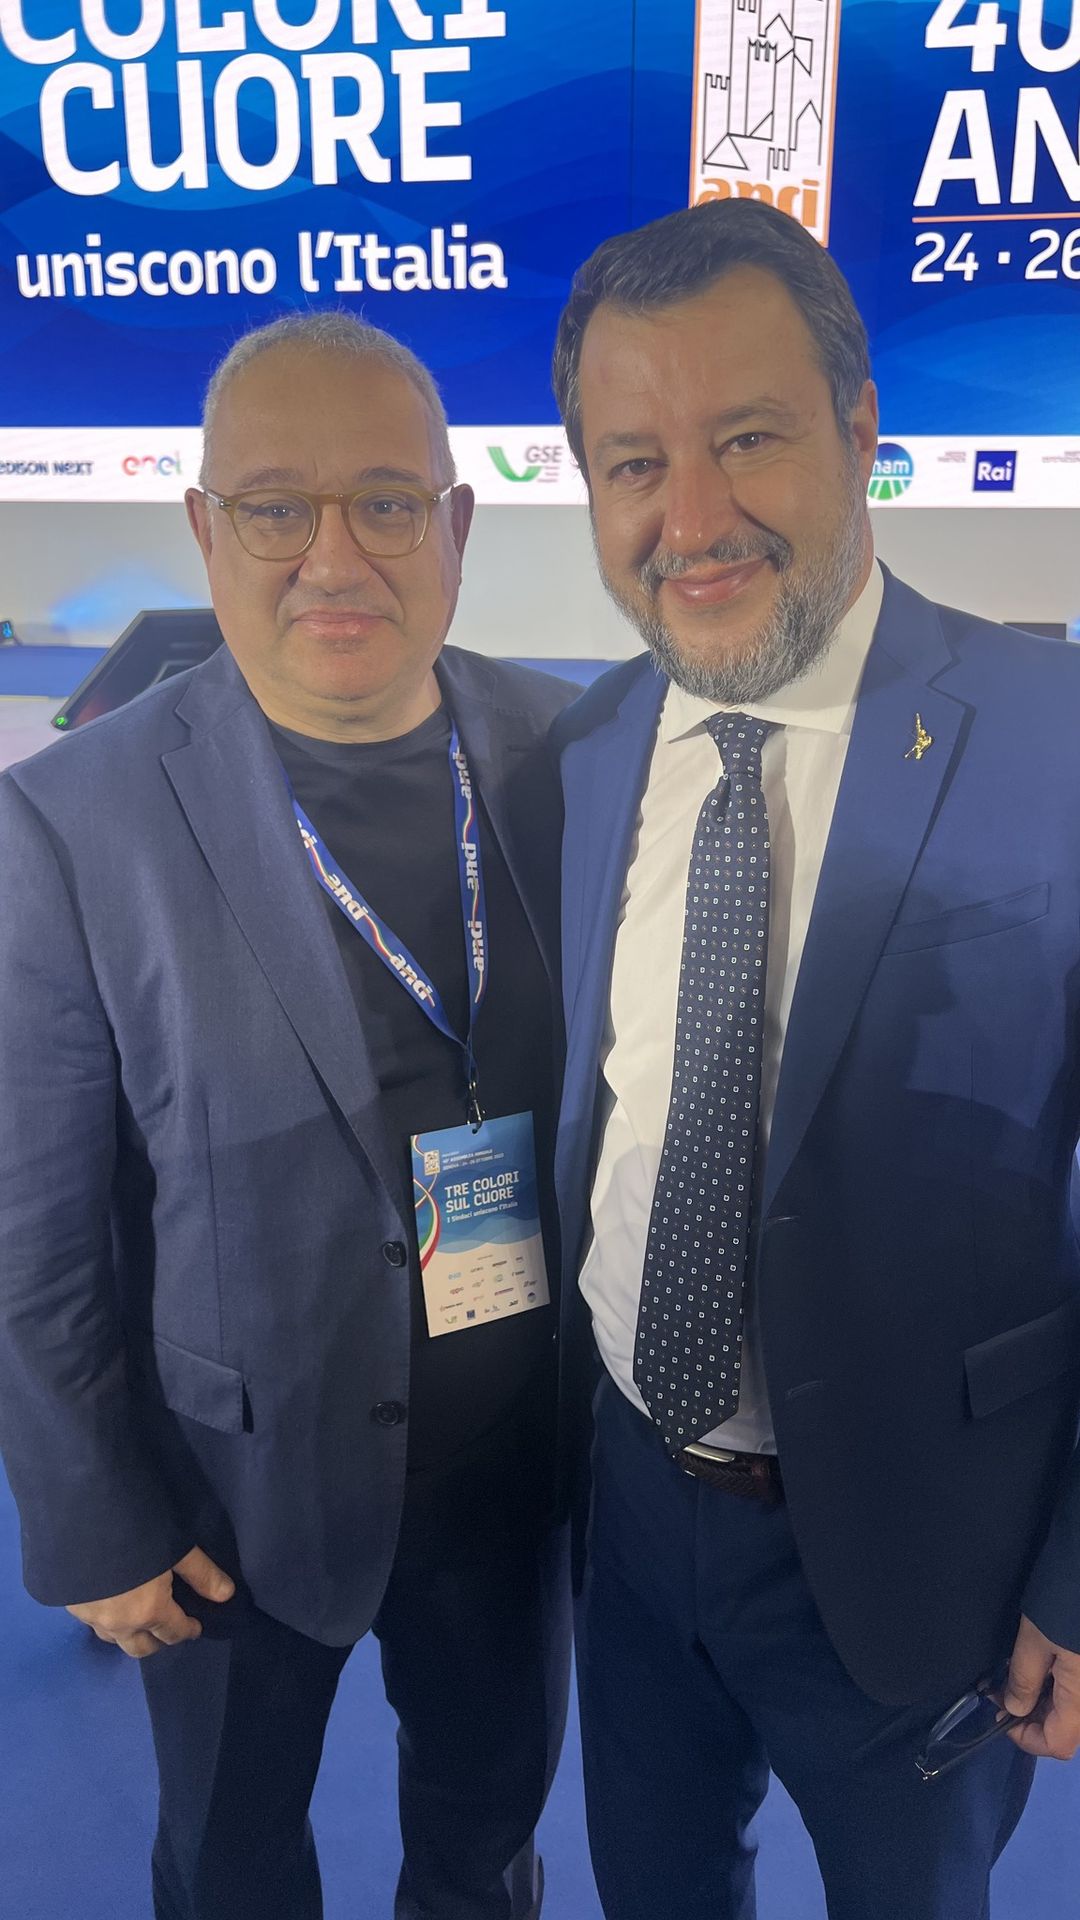 Il sindaco di Adrano Mancuso incontra il Ministro Salvini